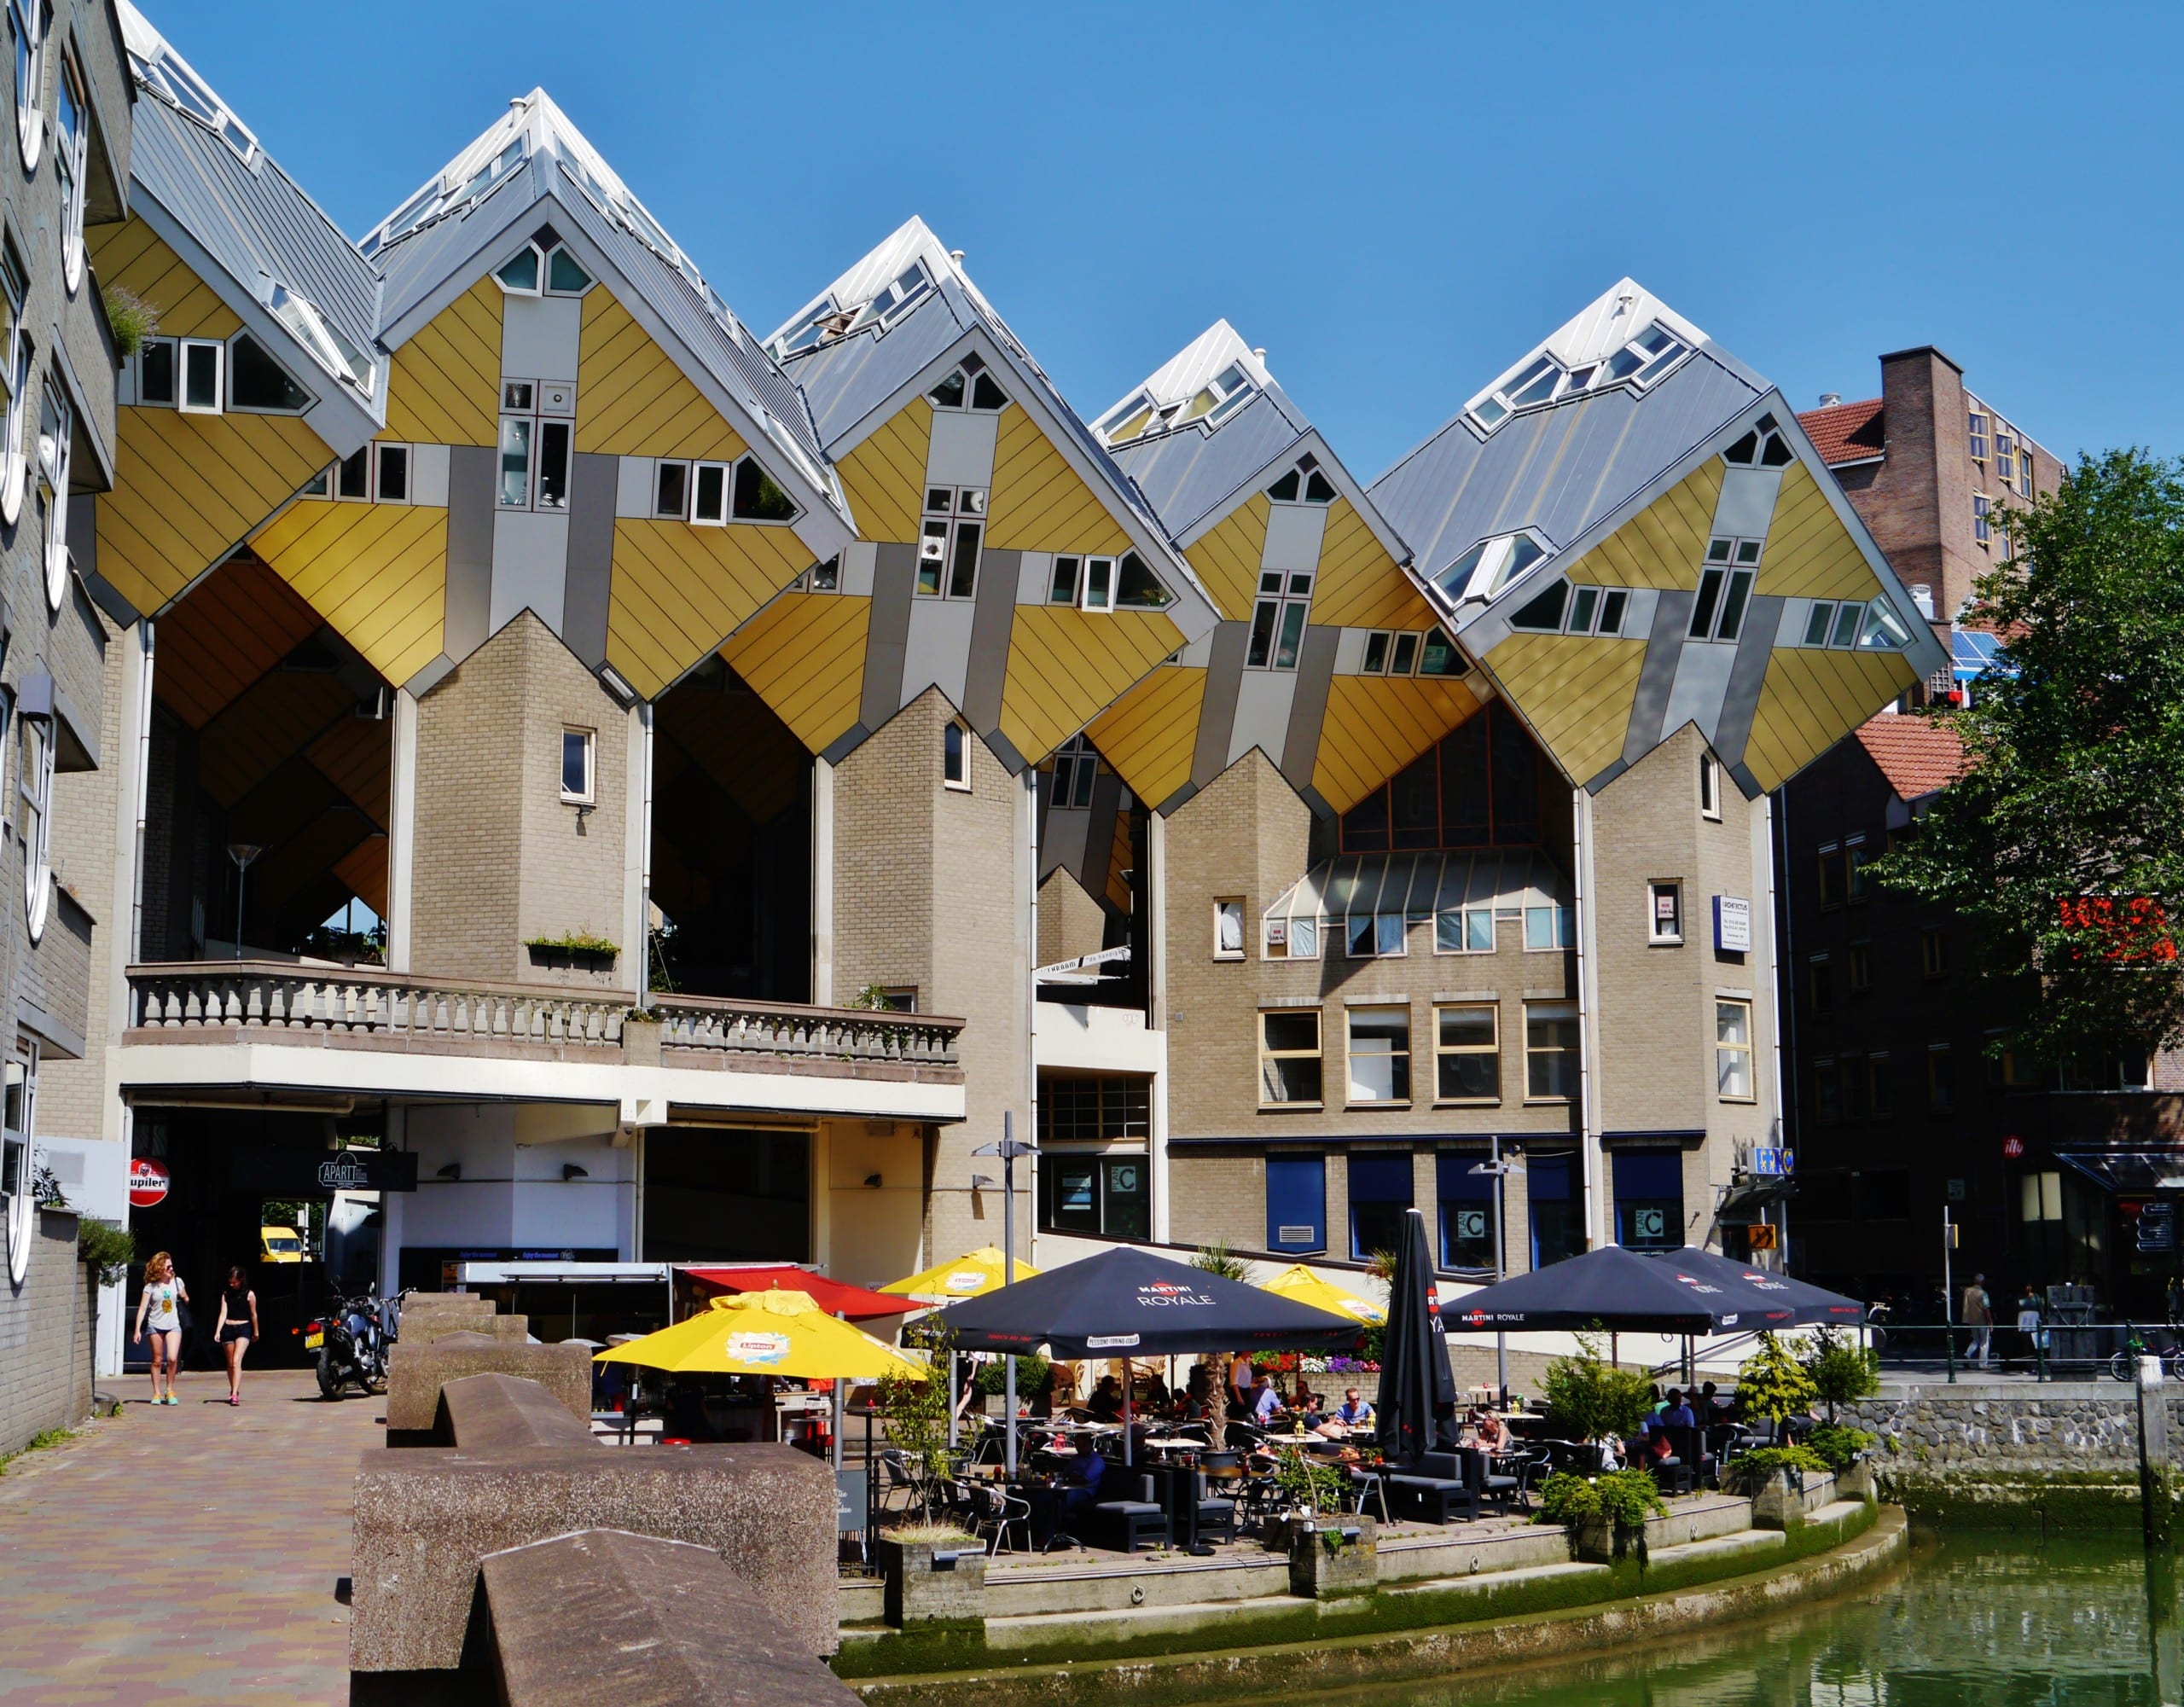 38 der Kubushäuser in Rotterdam sind bewohnt. Bildquelle: Zairon, CC BY-SA 4.0 , via Wikimedia Commons